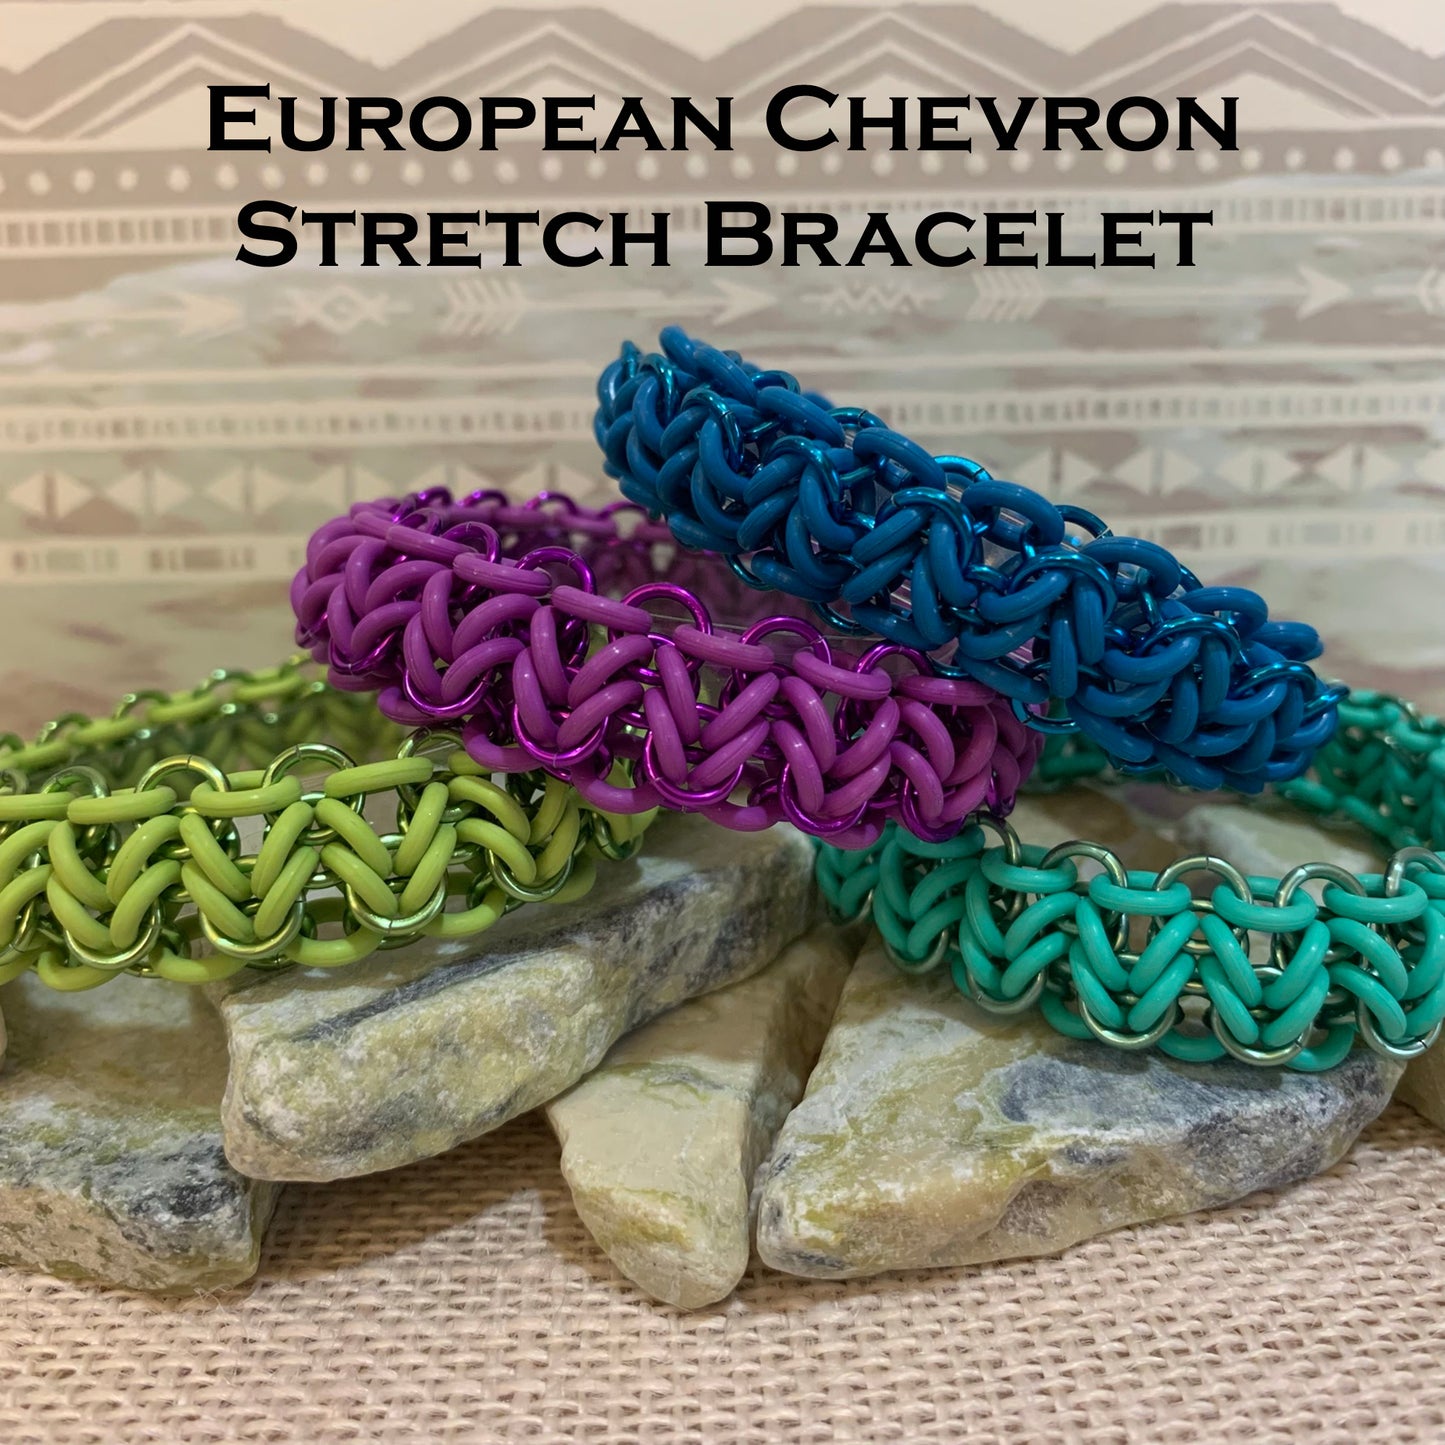 European Chevron Stretch Bracelet Kit with FREE video - Bright Kiwi